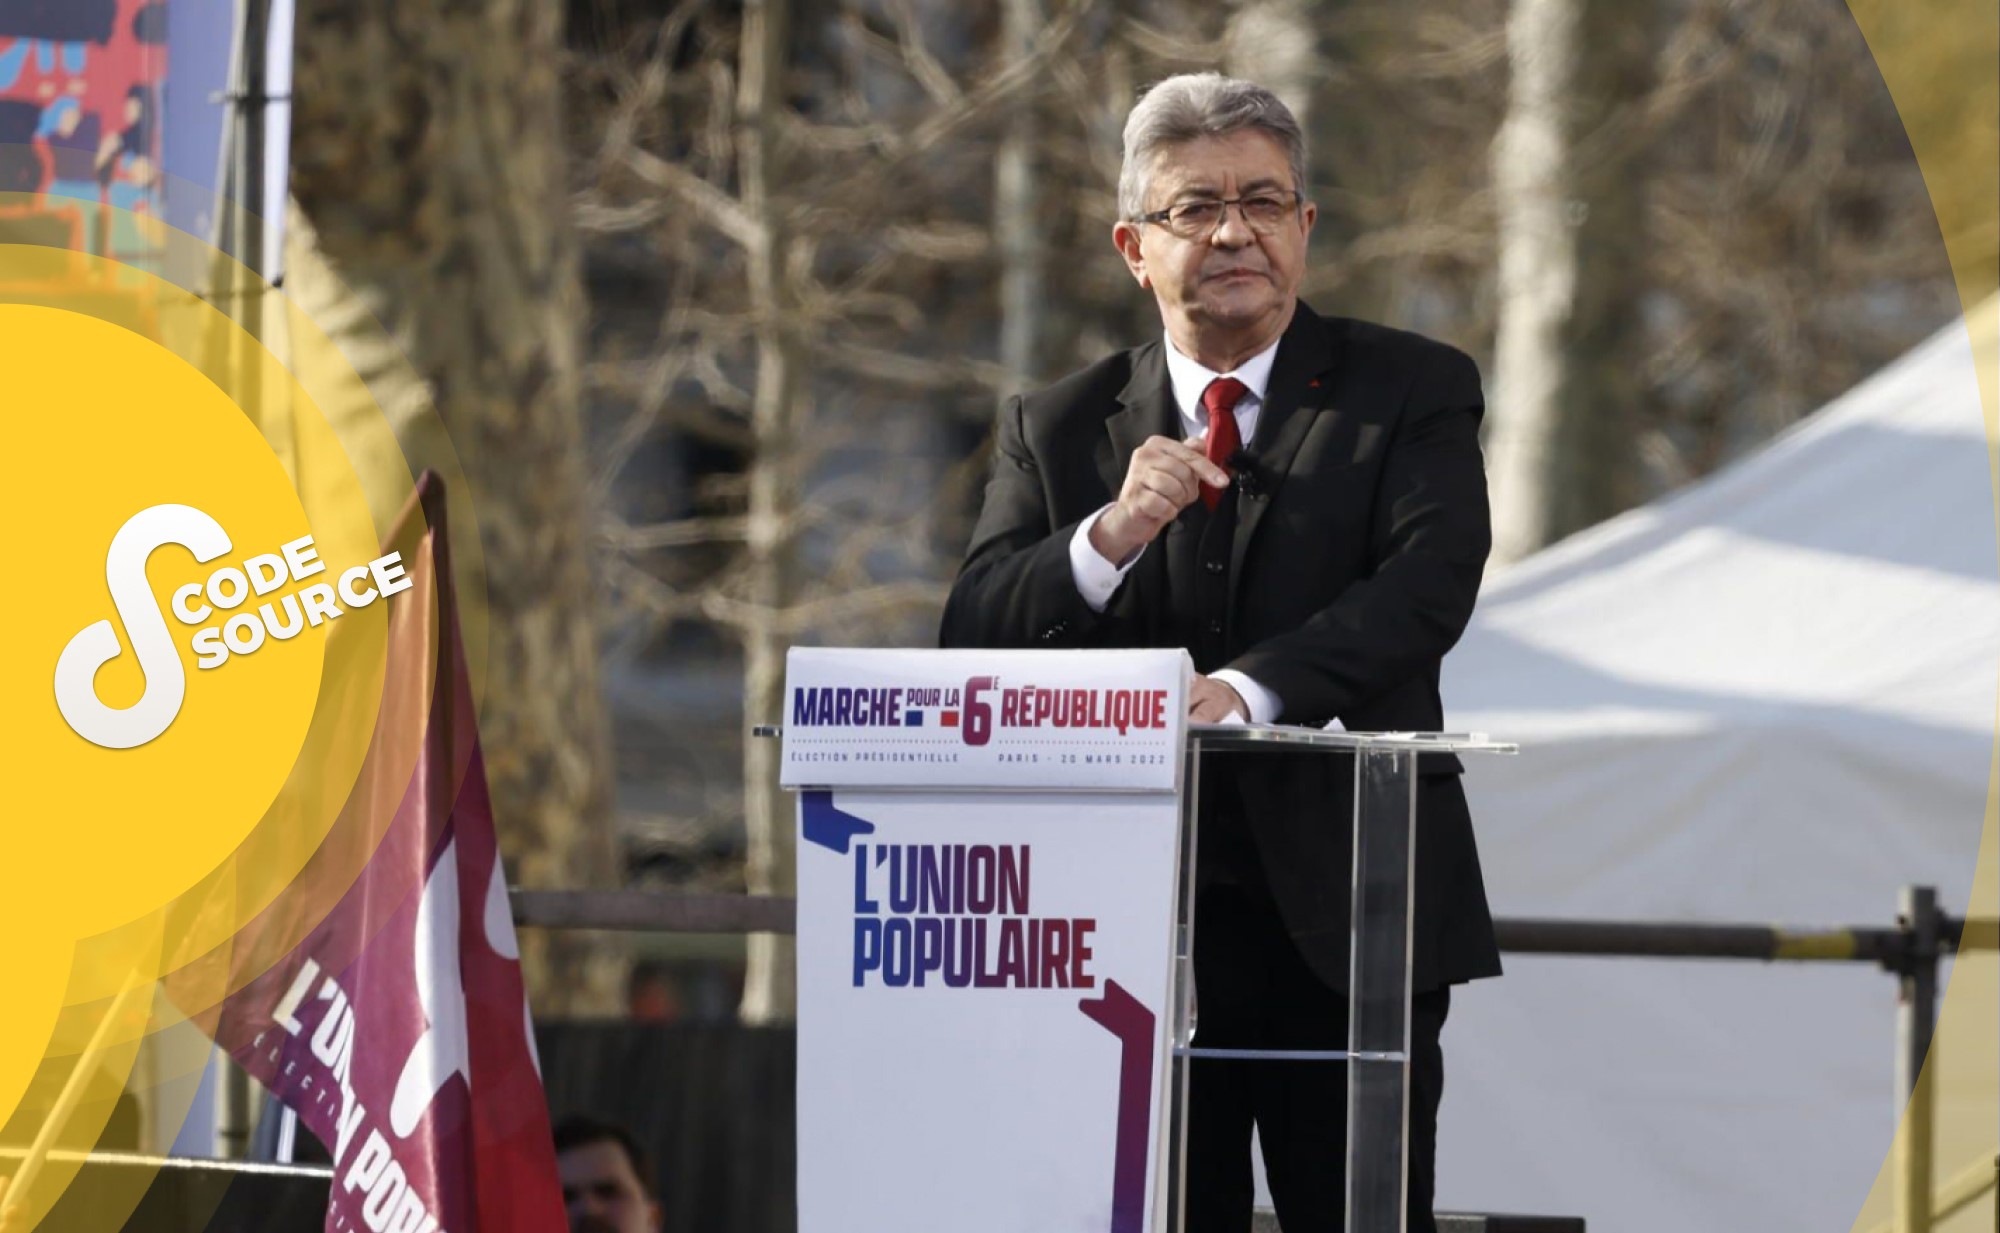 Le 20 mars 2022, Jean-Luc Mélenchon, candidat à l'élection présidentielle de 2022, a tenu un discours sur la place de la République à Paris, devant 100 000 personnes.